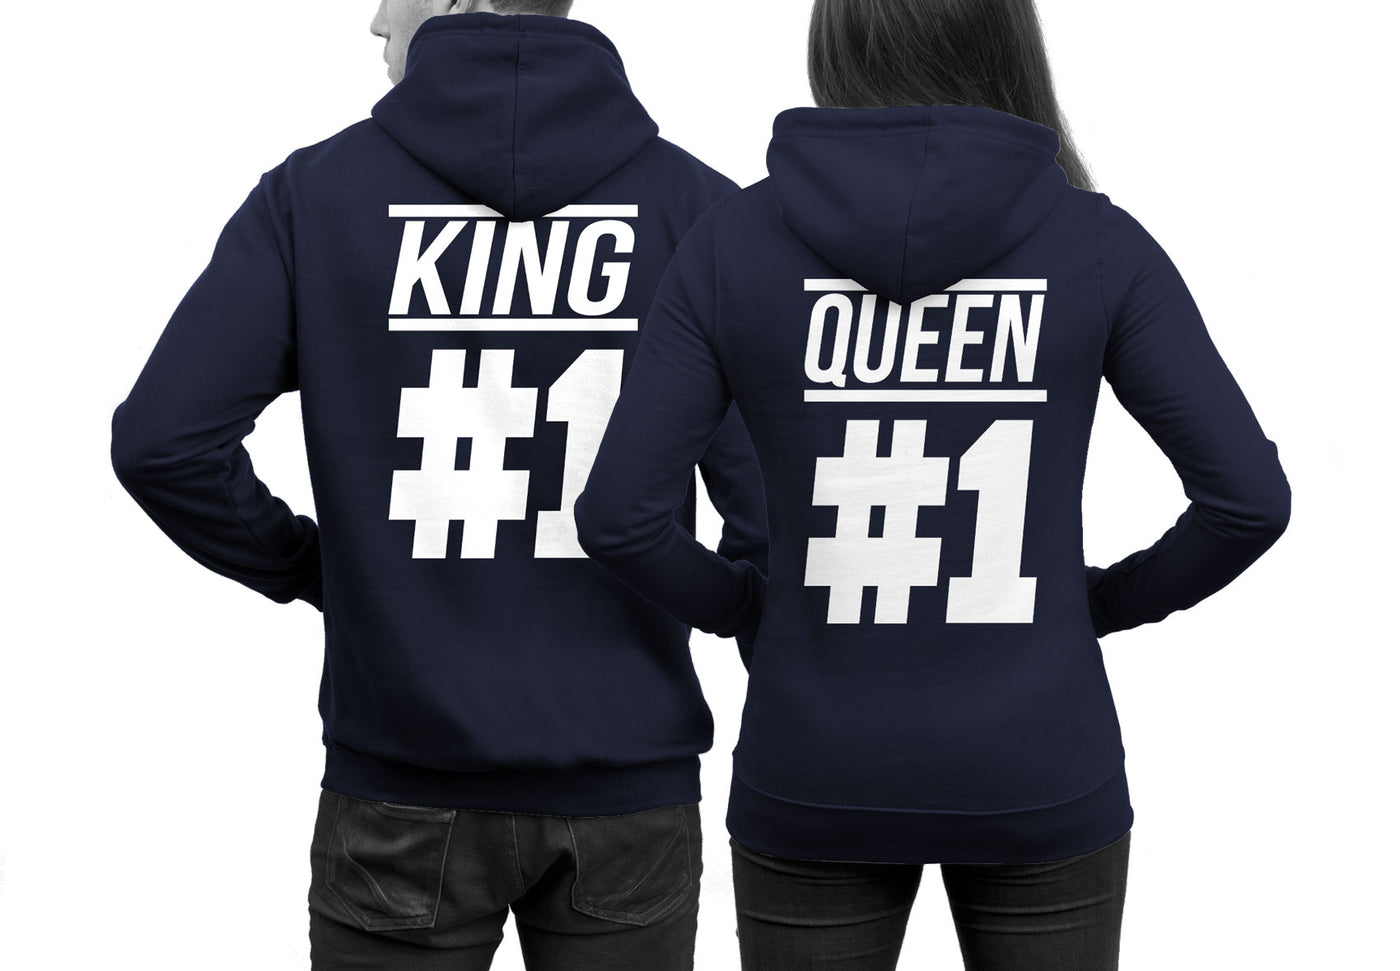 king-1-queen-1-hoodies-navy96hod